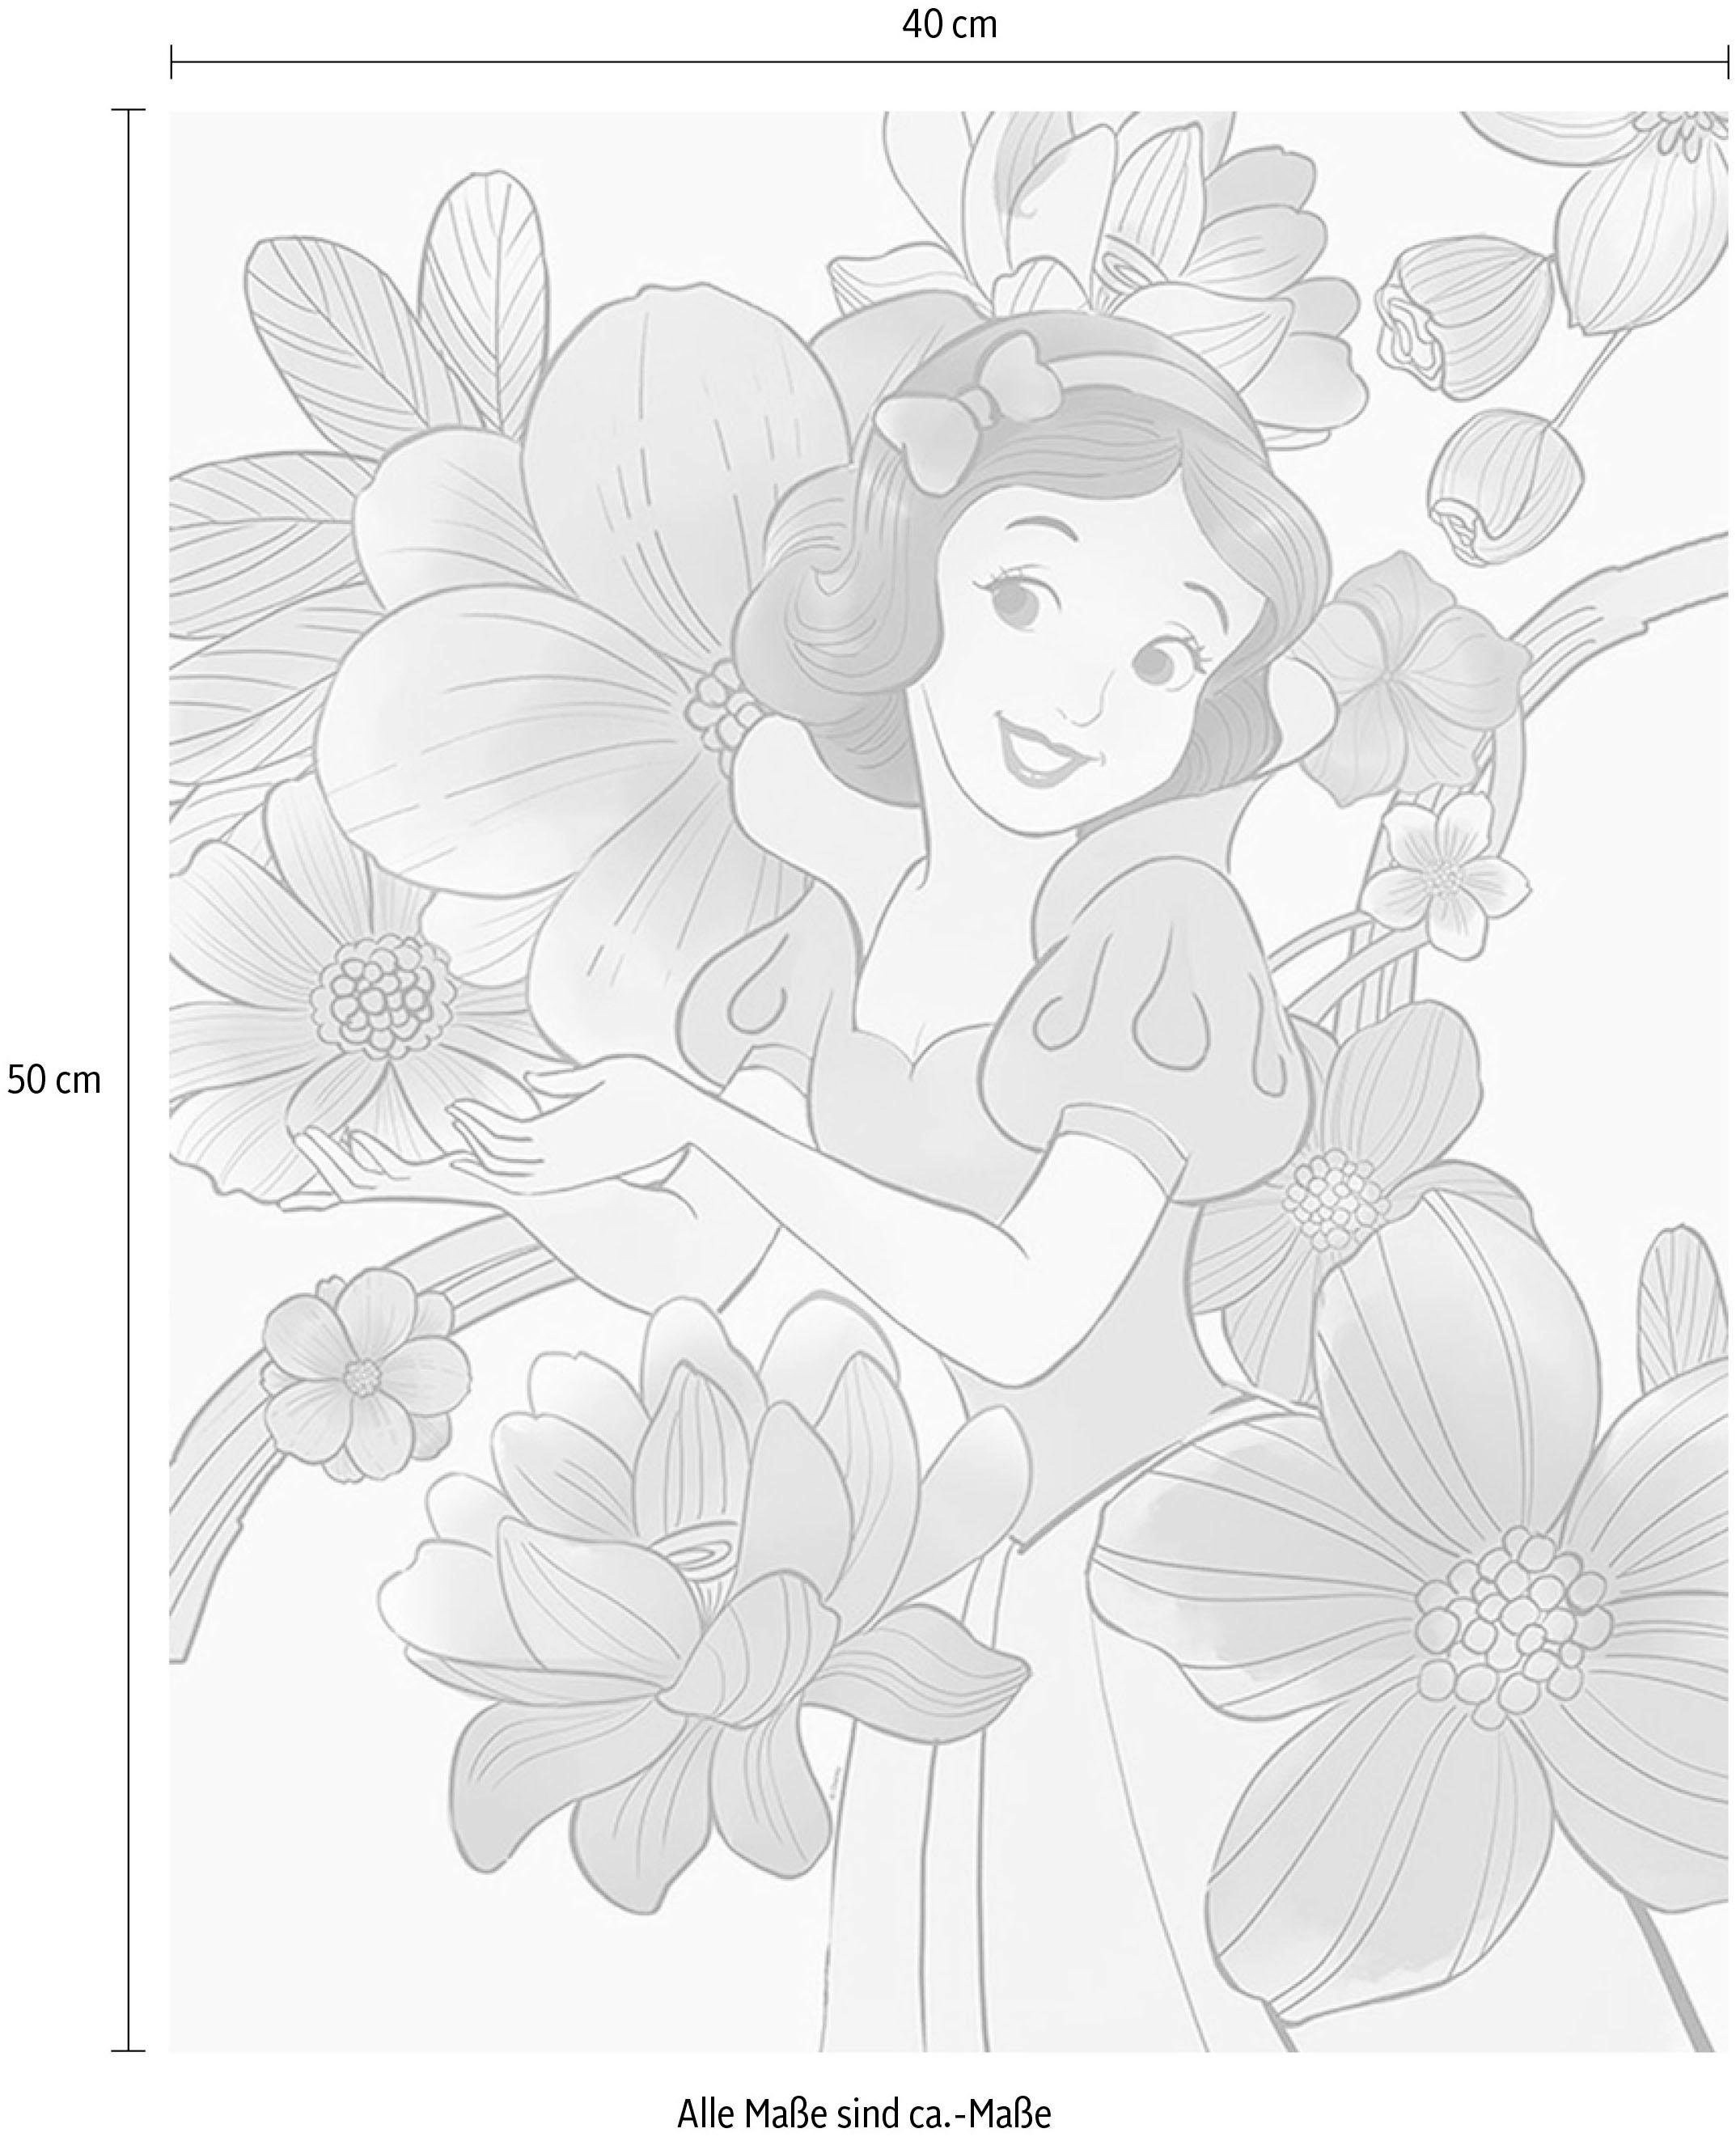 Komar Poster »Snow White Flowers«, Disney, (1 St.), Kinderzimmer, Schlafzimmer, Wohnzimmer